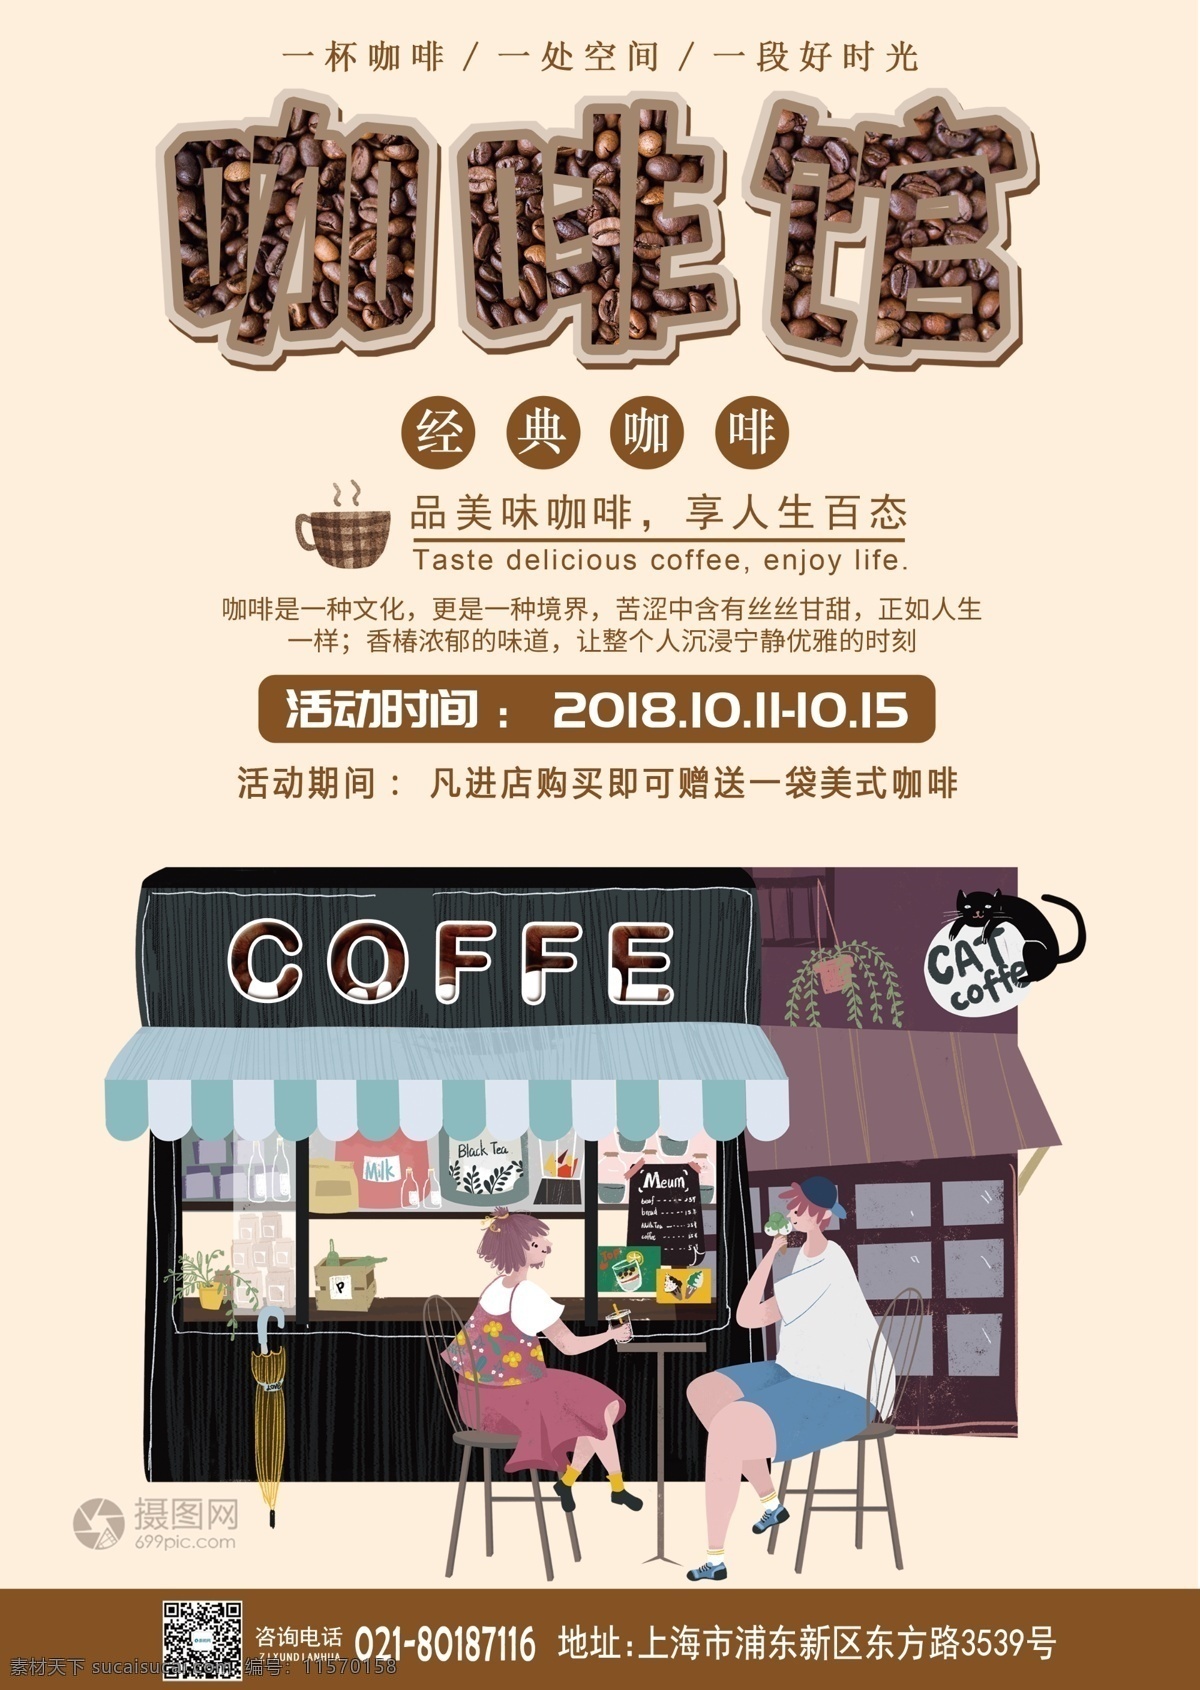 咖啡馆宣传单 传单设计 美食餐饮 咖啡厅 促销传单 咖啡店 咖啡 菜单设计 宣传单